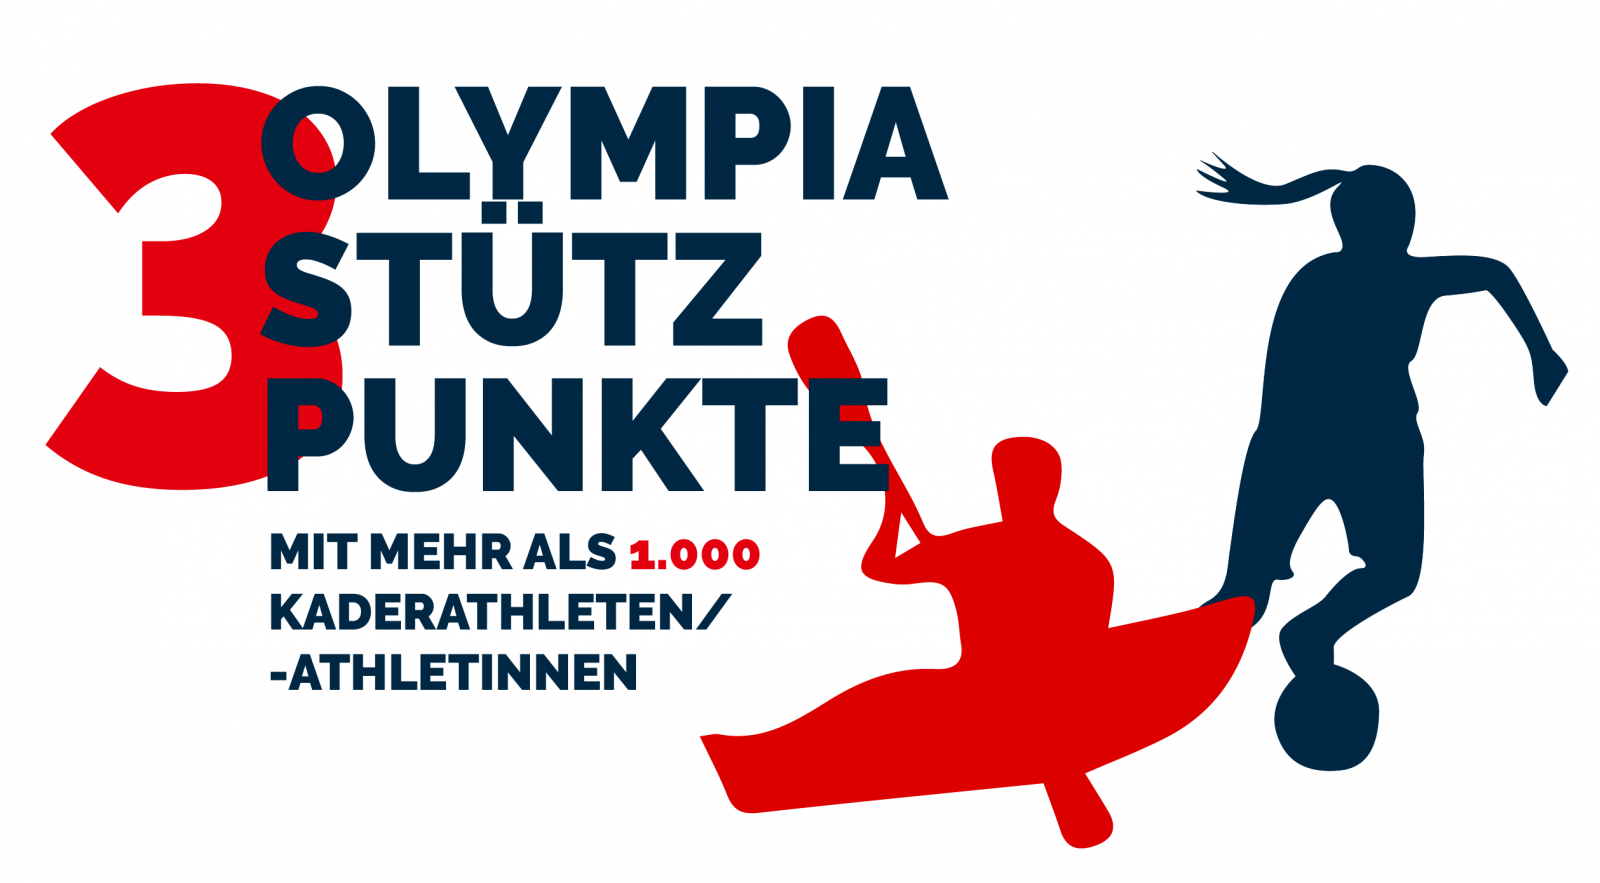 3 Olympia Stützpunkte mit mehr als 1.000 Kaderathletien/-athletinnen